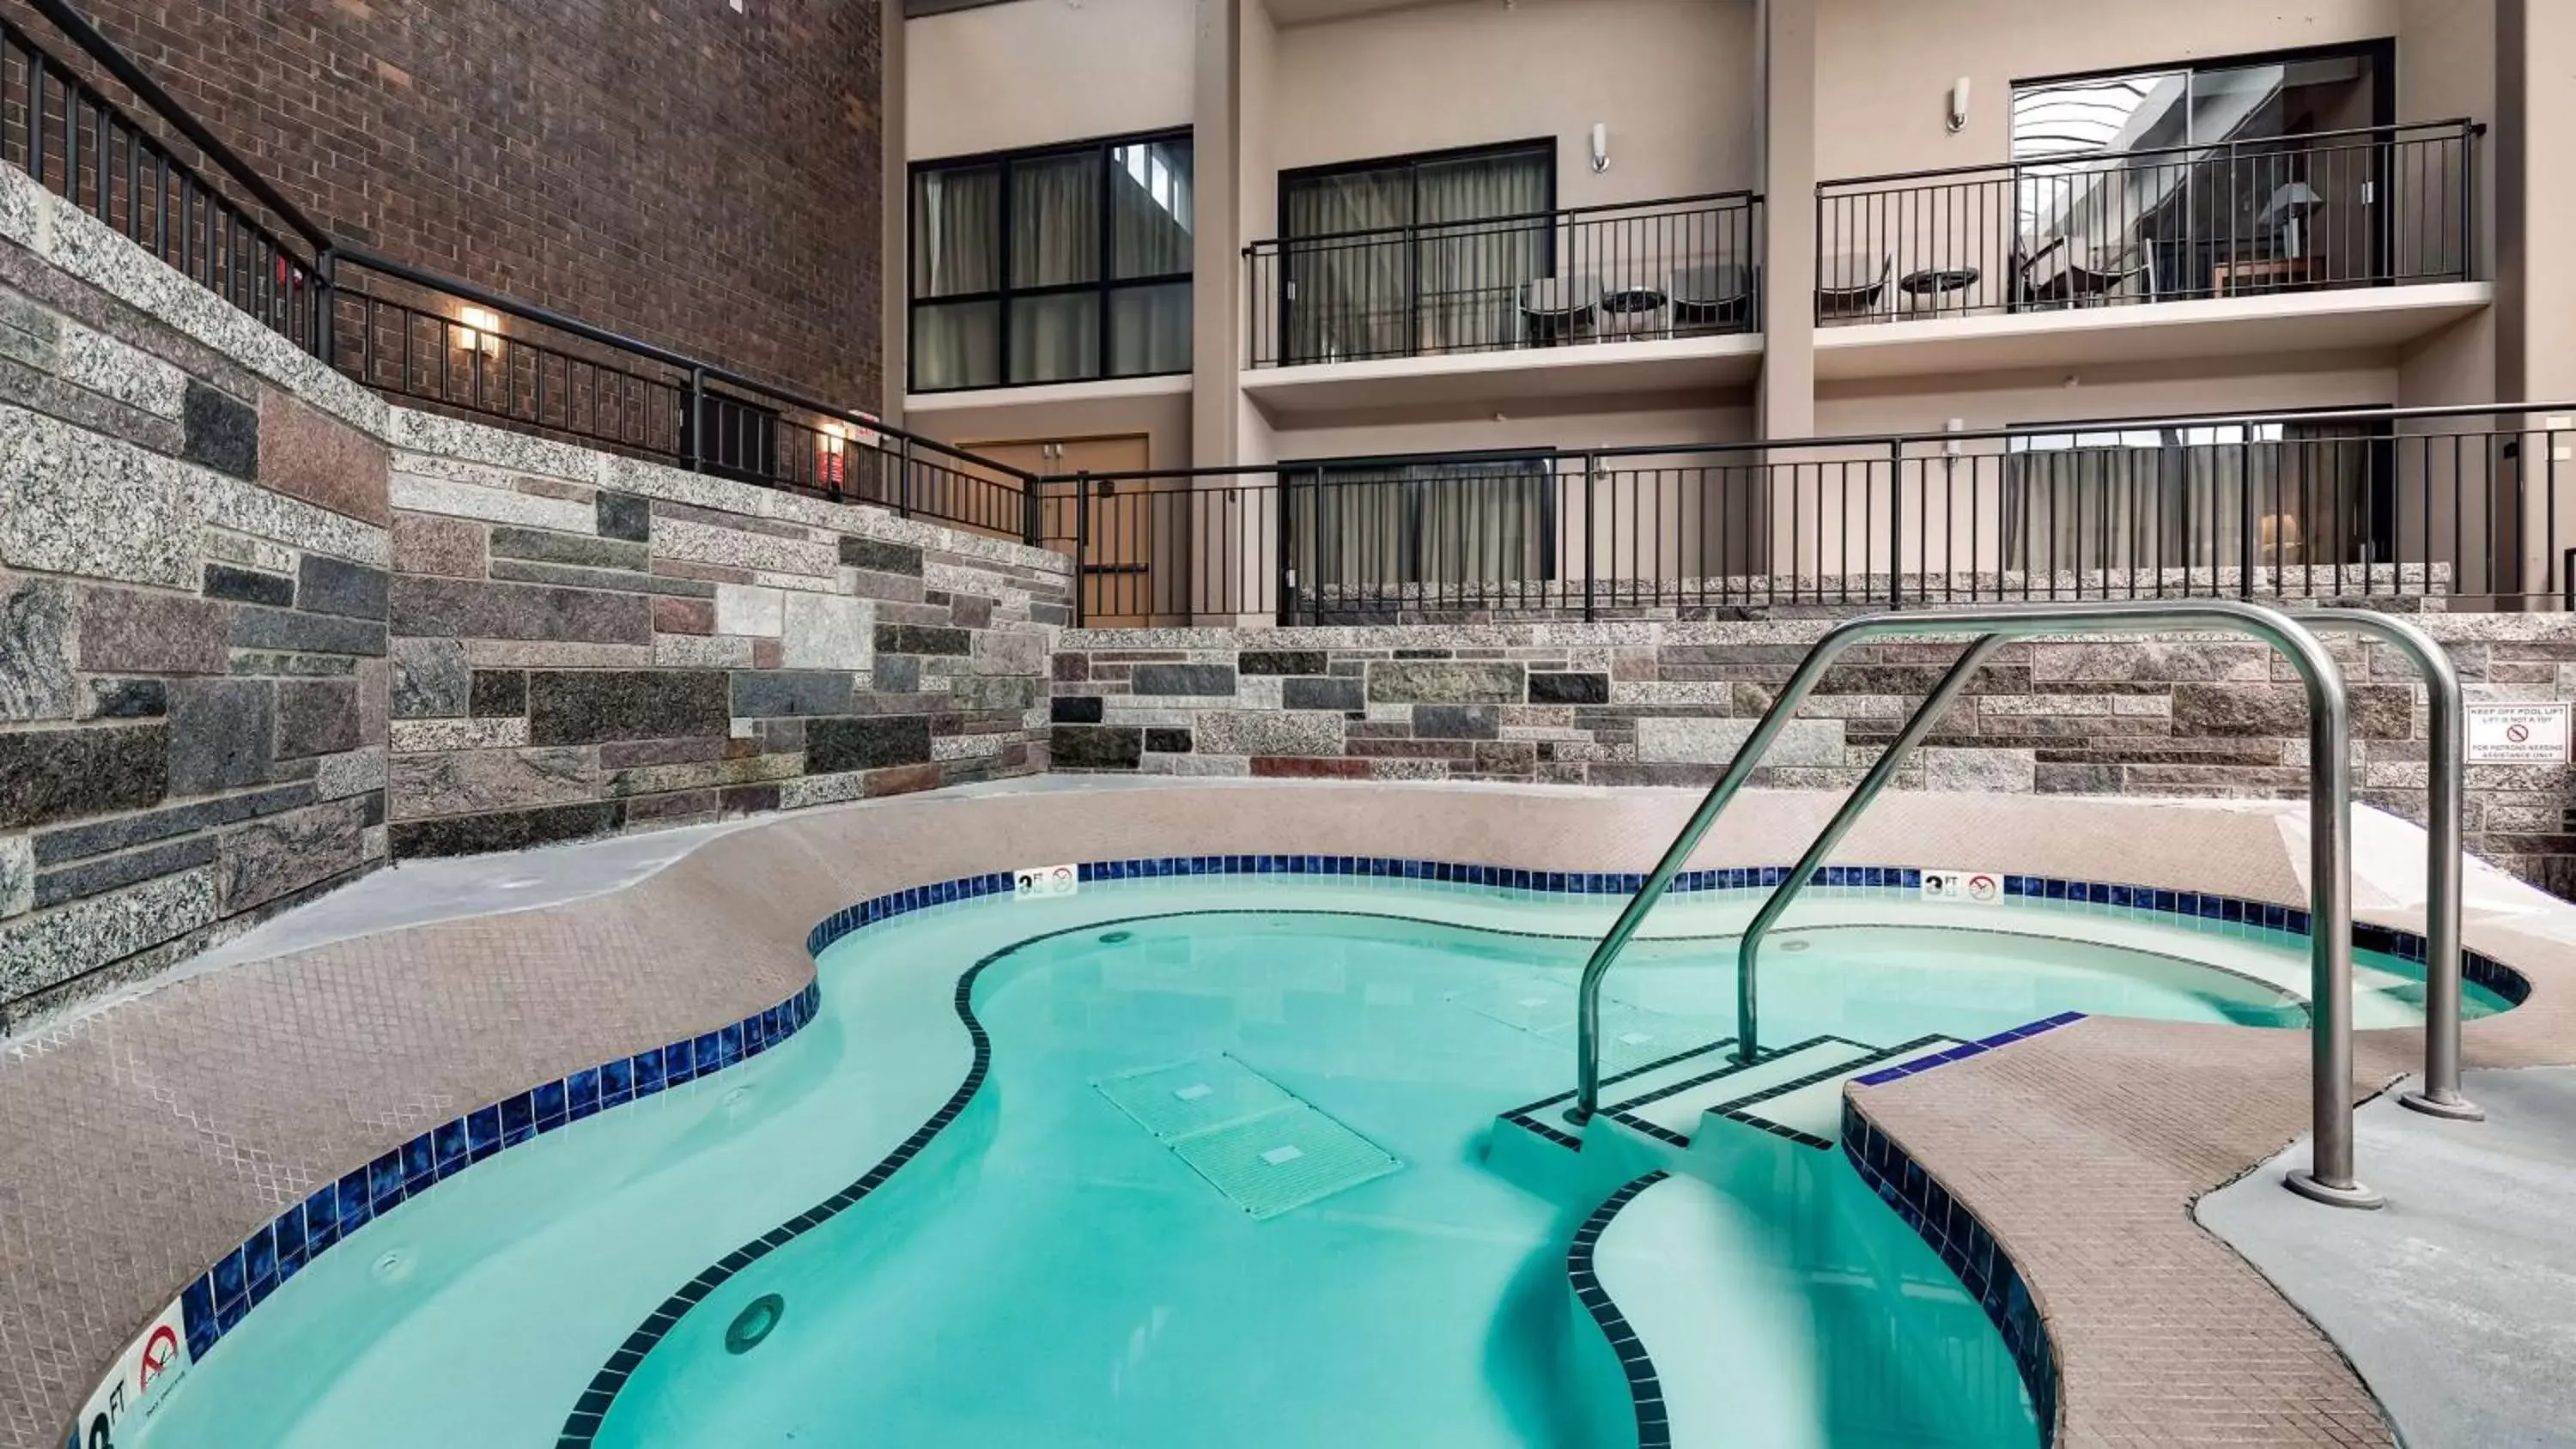 On site, Swimming Pool in Best Western Plus Bloomington Hotel